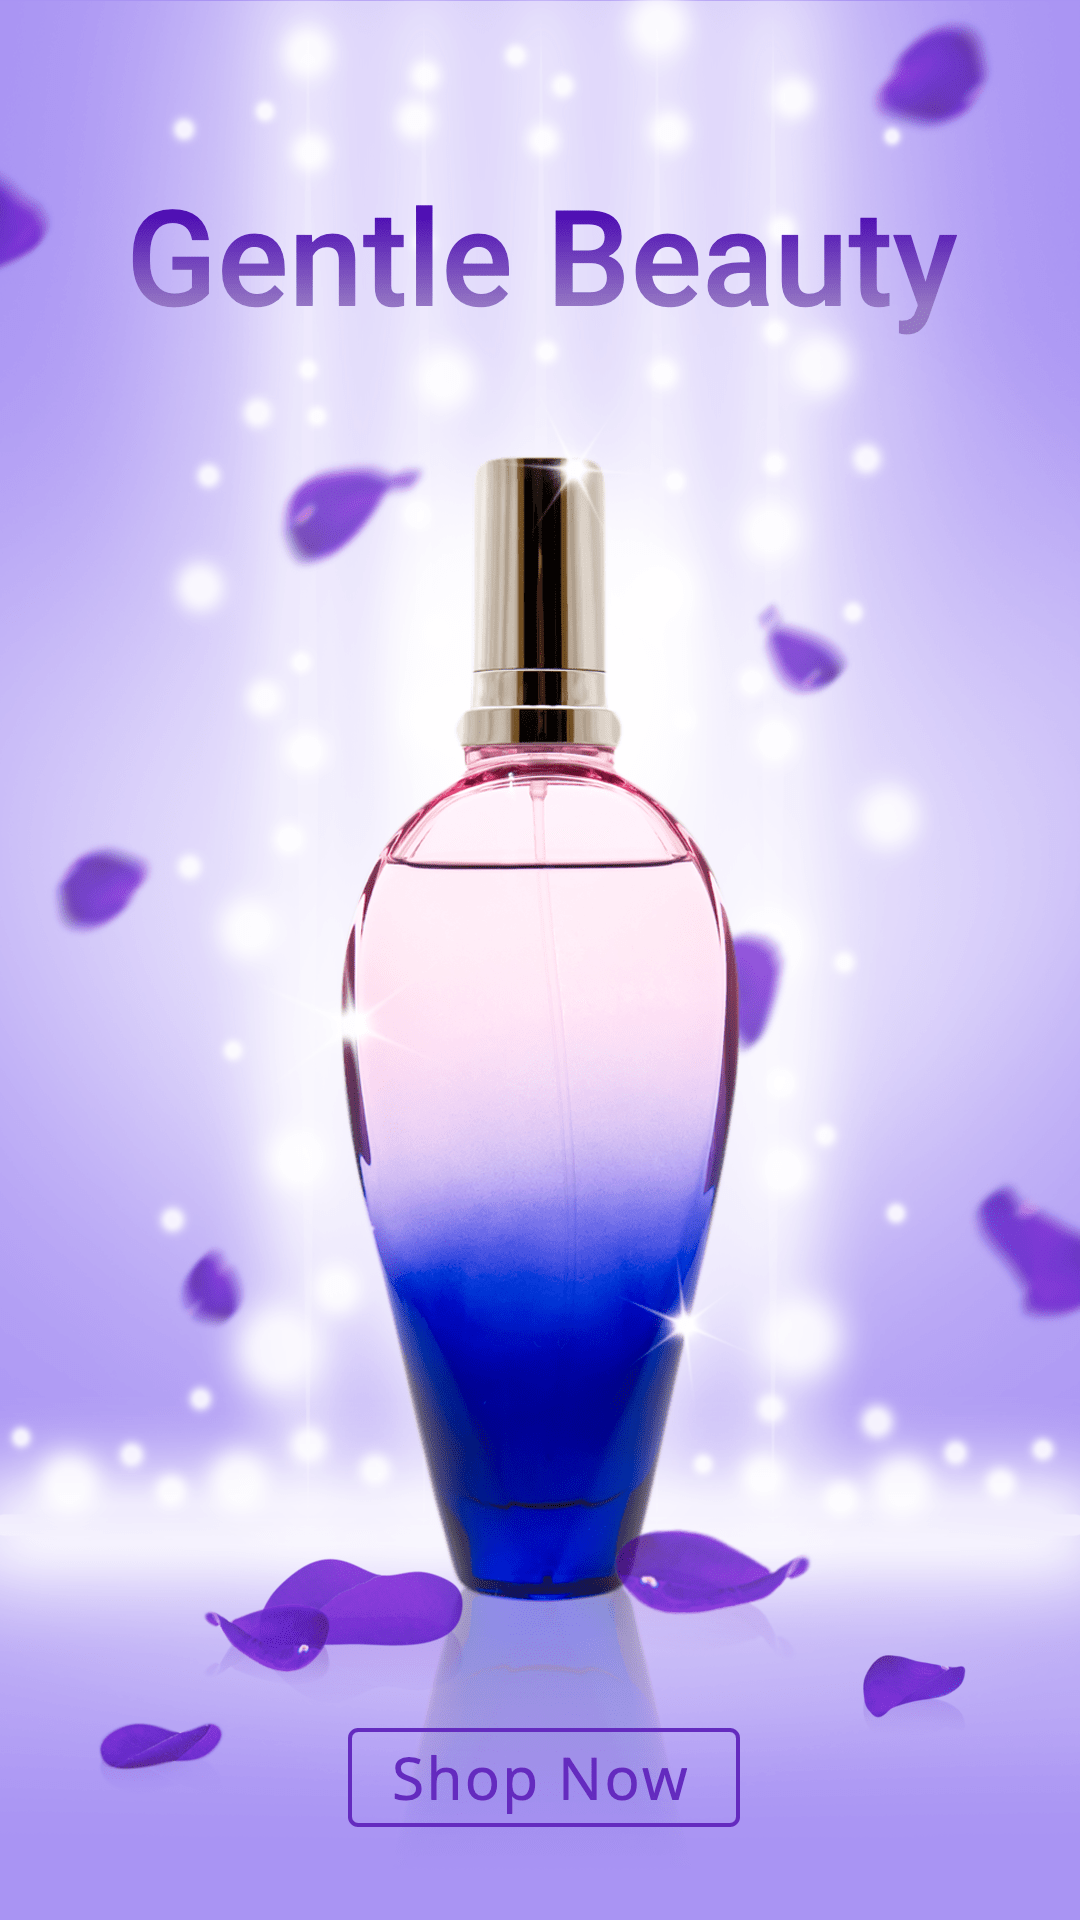 Petal Element Women’s Perfume Fragrance Sale Promotion Ecommerce Story预览效果